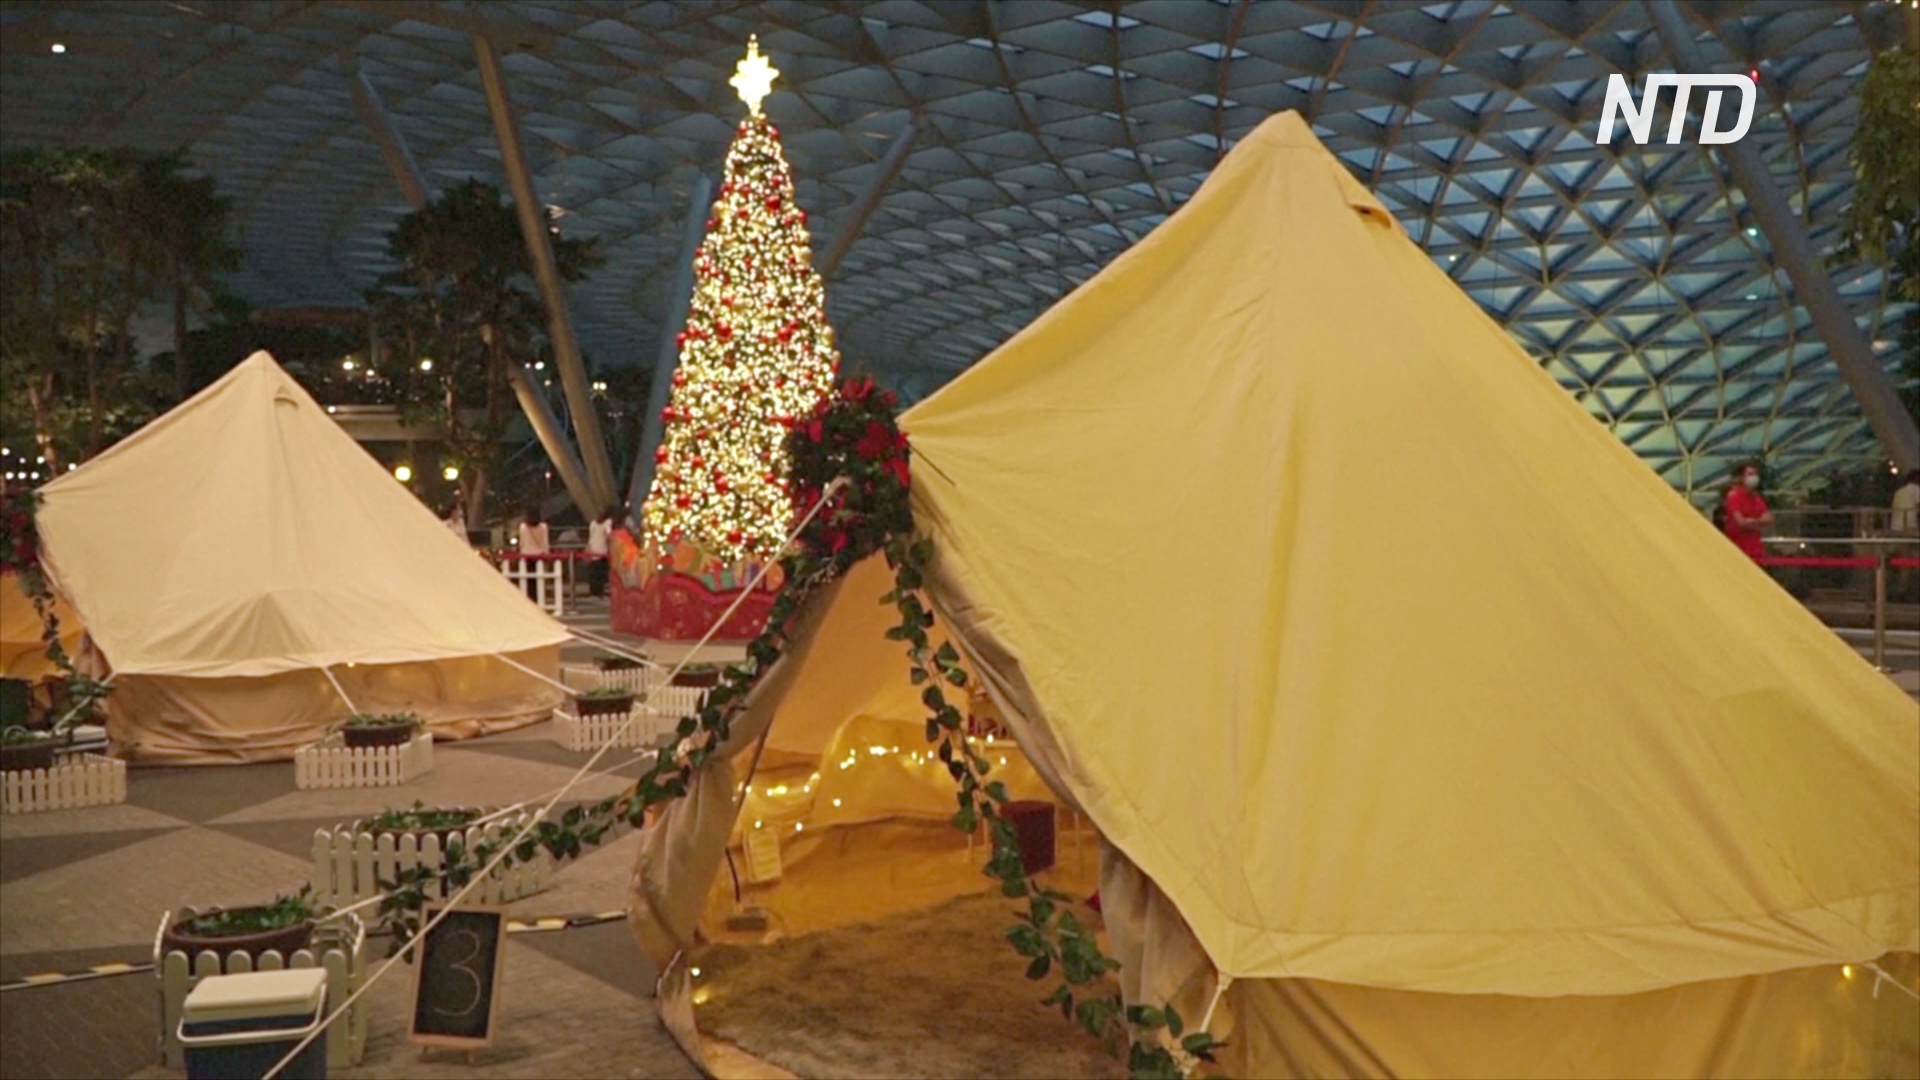 Вместо авиарейса – палатка: в аэропорту Сингапура оборудовали гламурный кемпинг